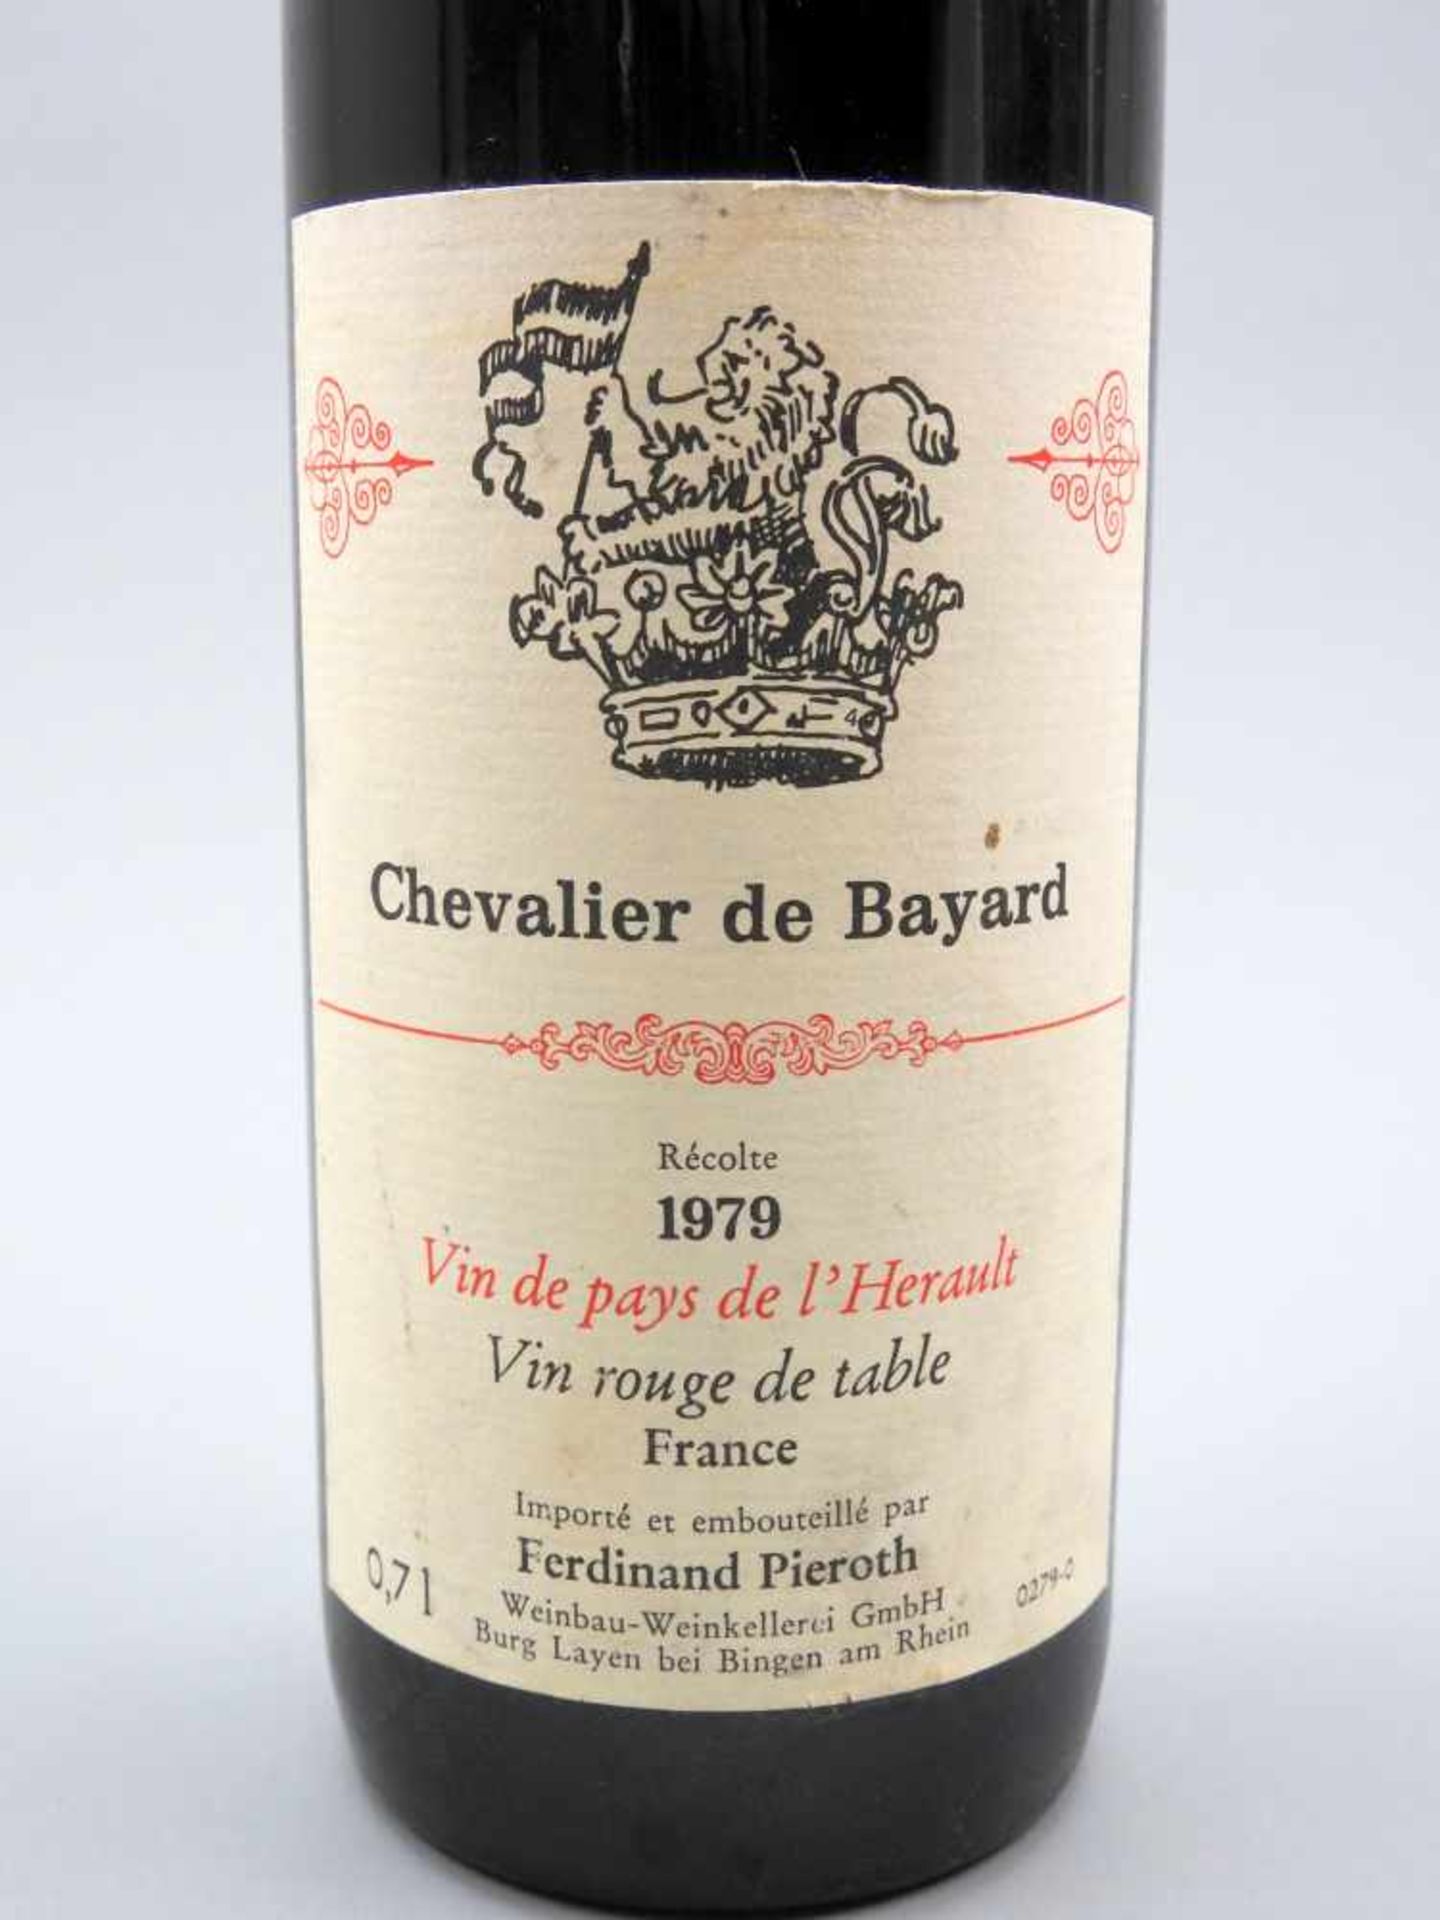 Chevalier de BayardVin de Pays de l'Hérault. Ferdinand Pieroth, Jahrgang 1979, Inhalt - Image 2 of 2